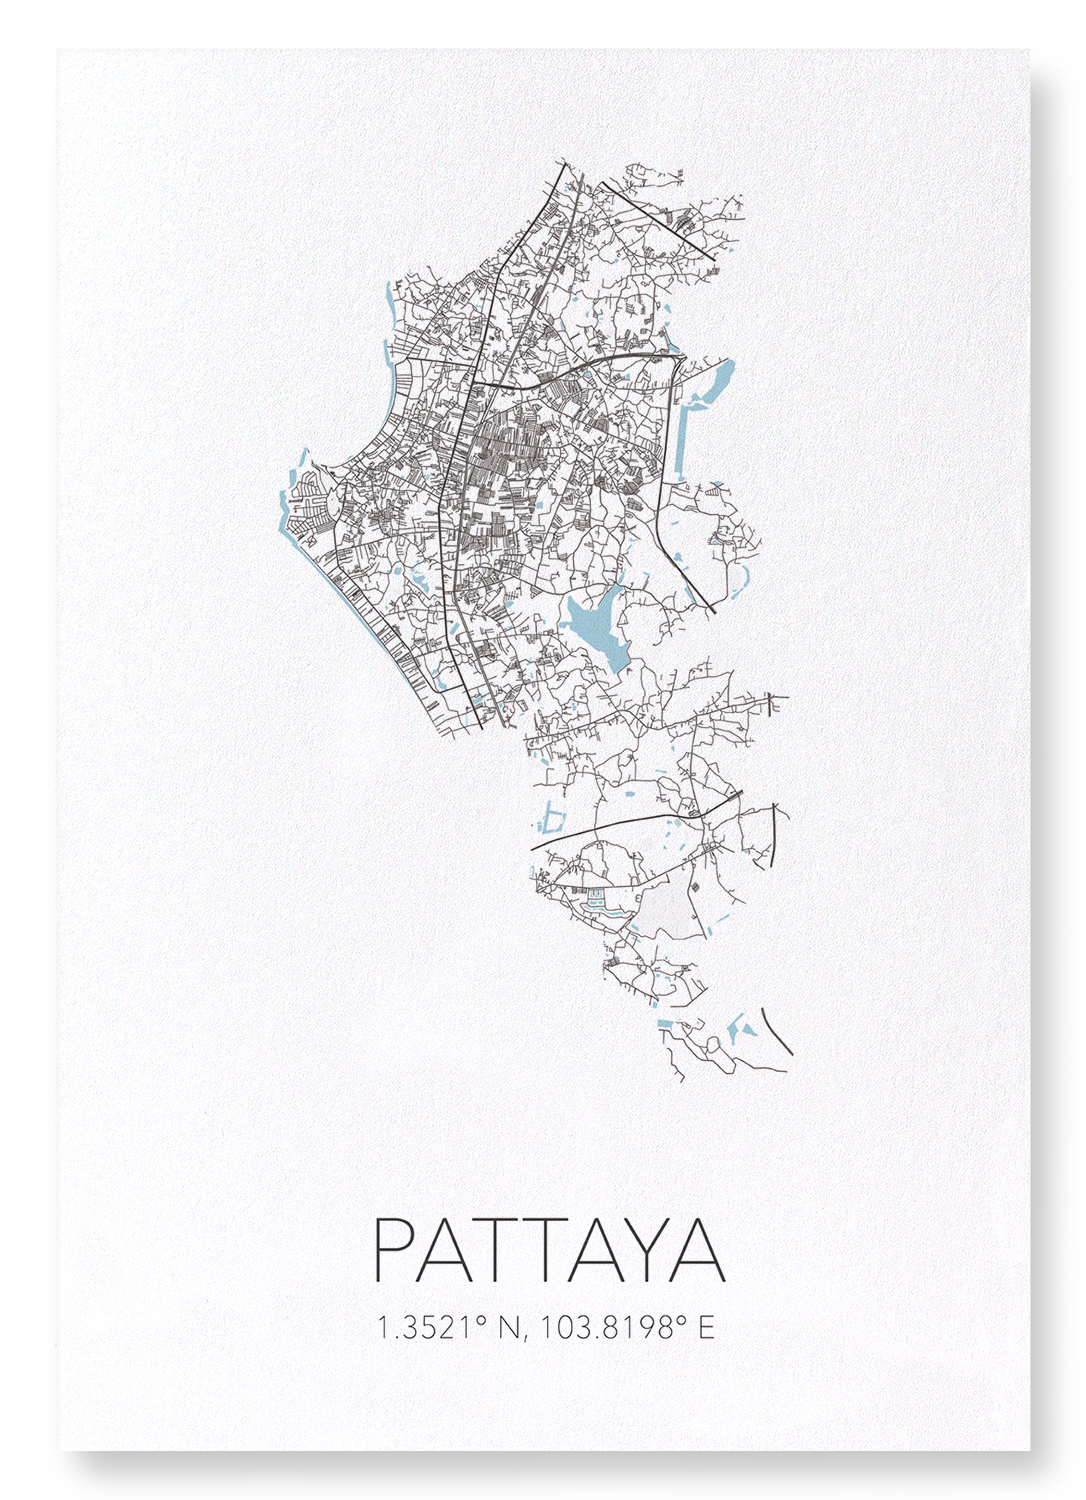 PATTAYA CUTOUT: Map Cutout Art Print